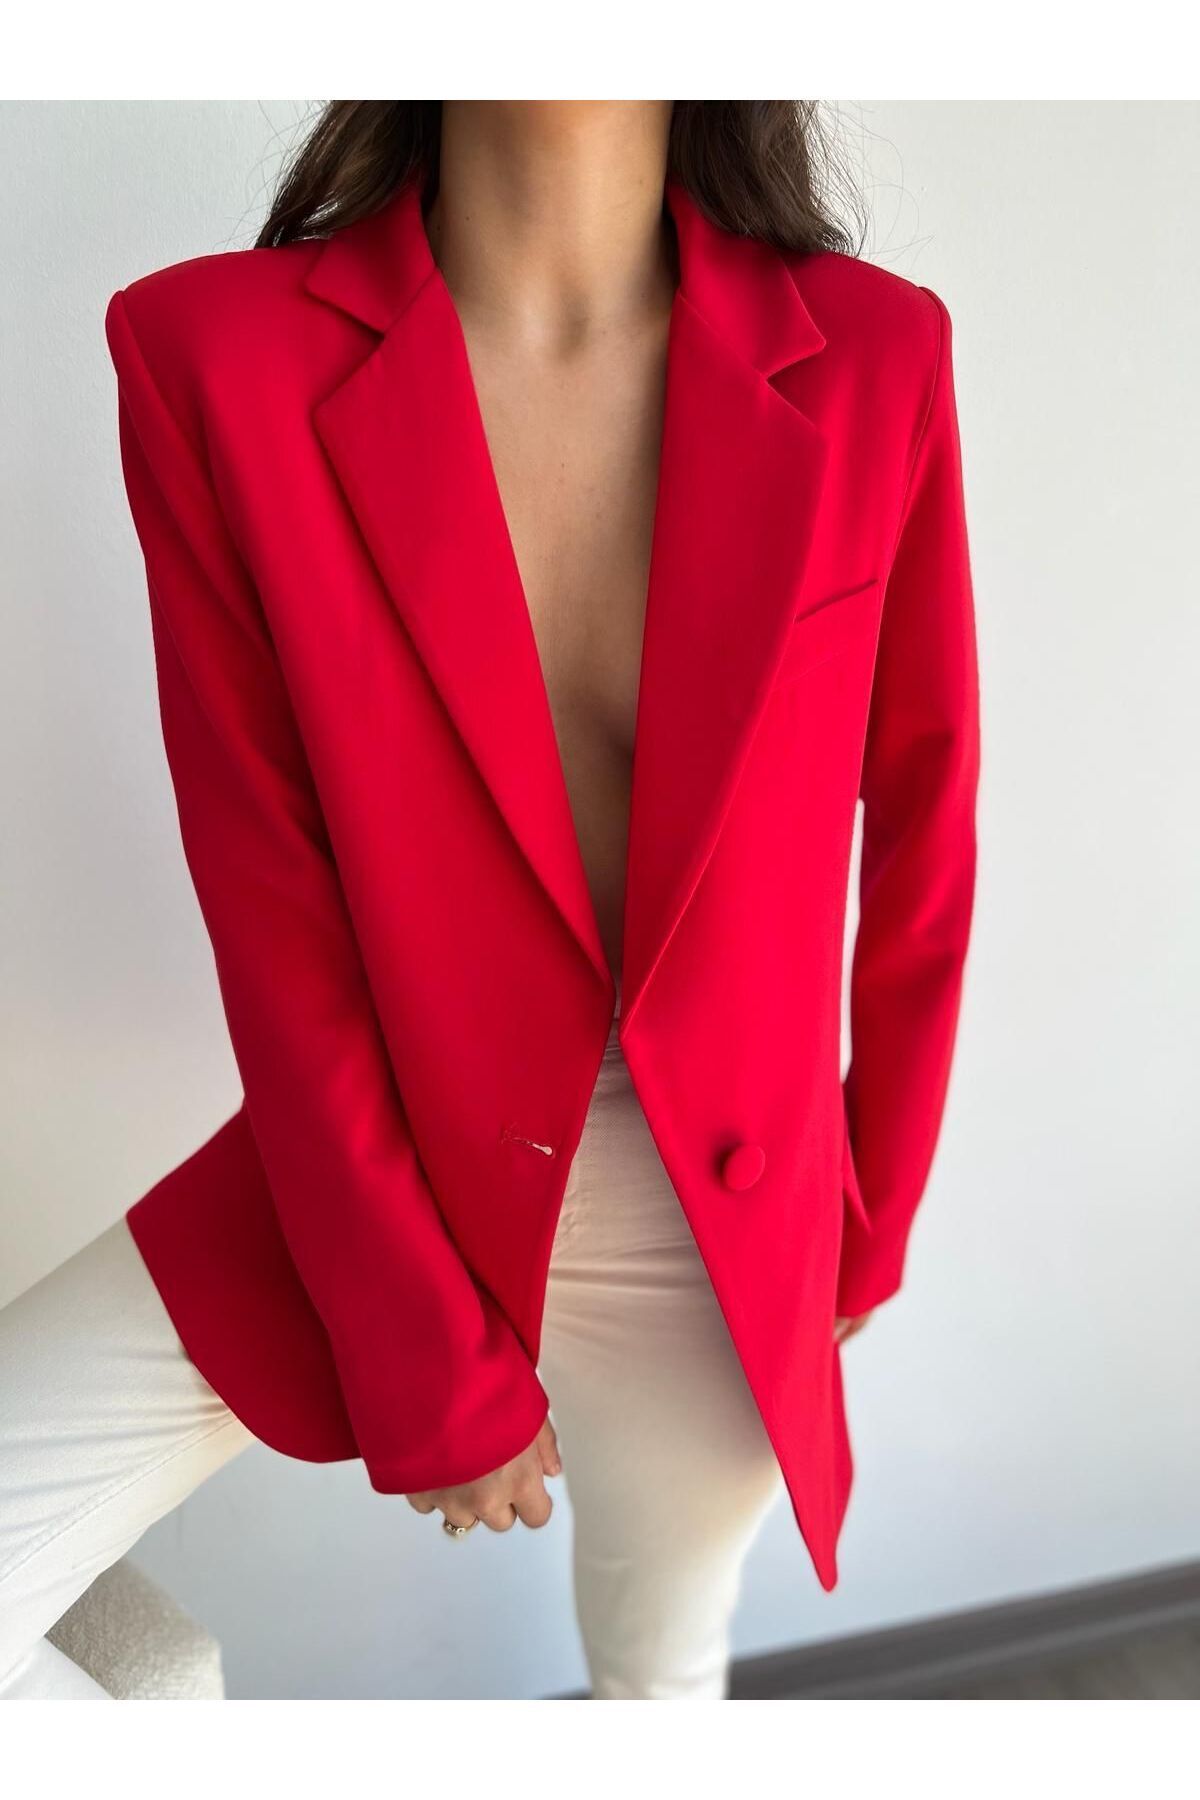 CYU Canlı Kırmızı Oversize Uzun Blazer Kadın Ceket